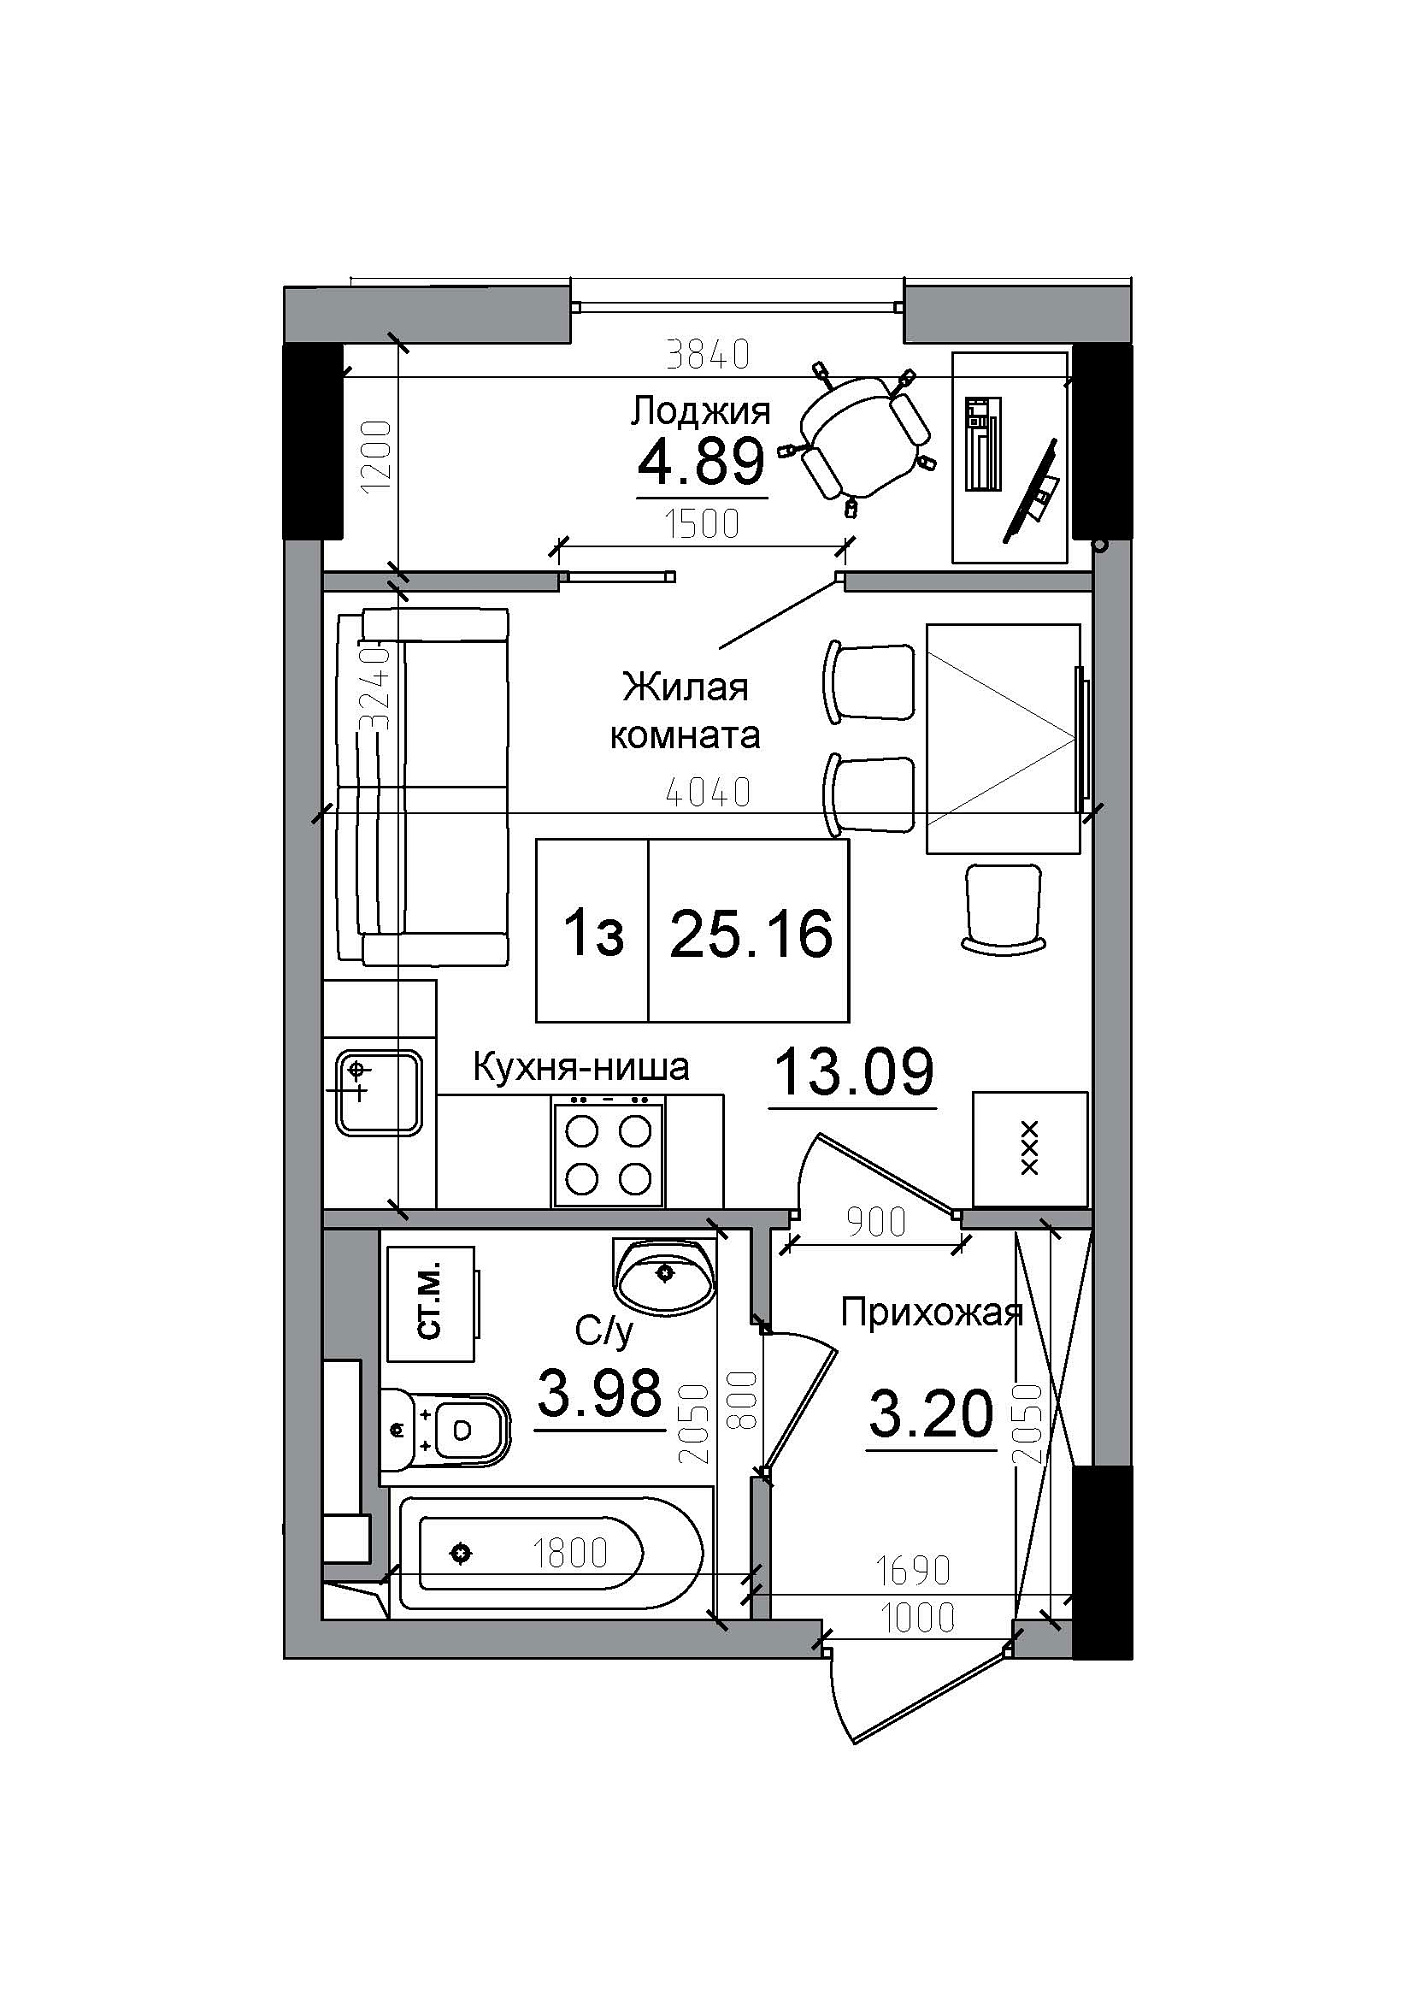 Планування Smart-квартира площею 25.16м2, AB-12-02/00009.